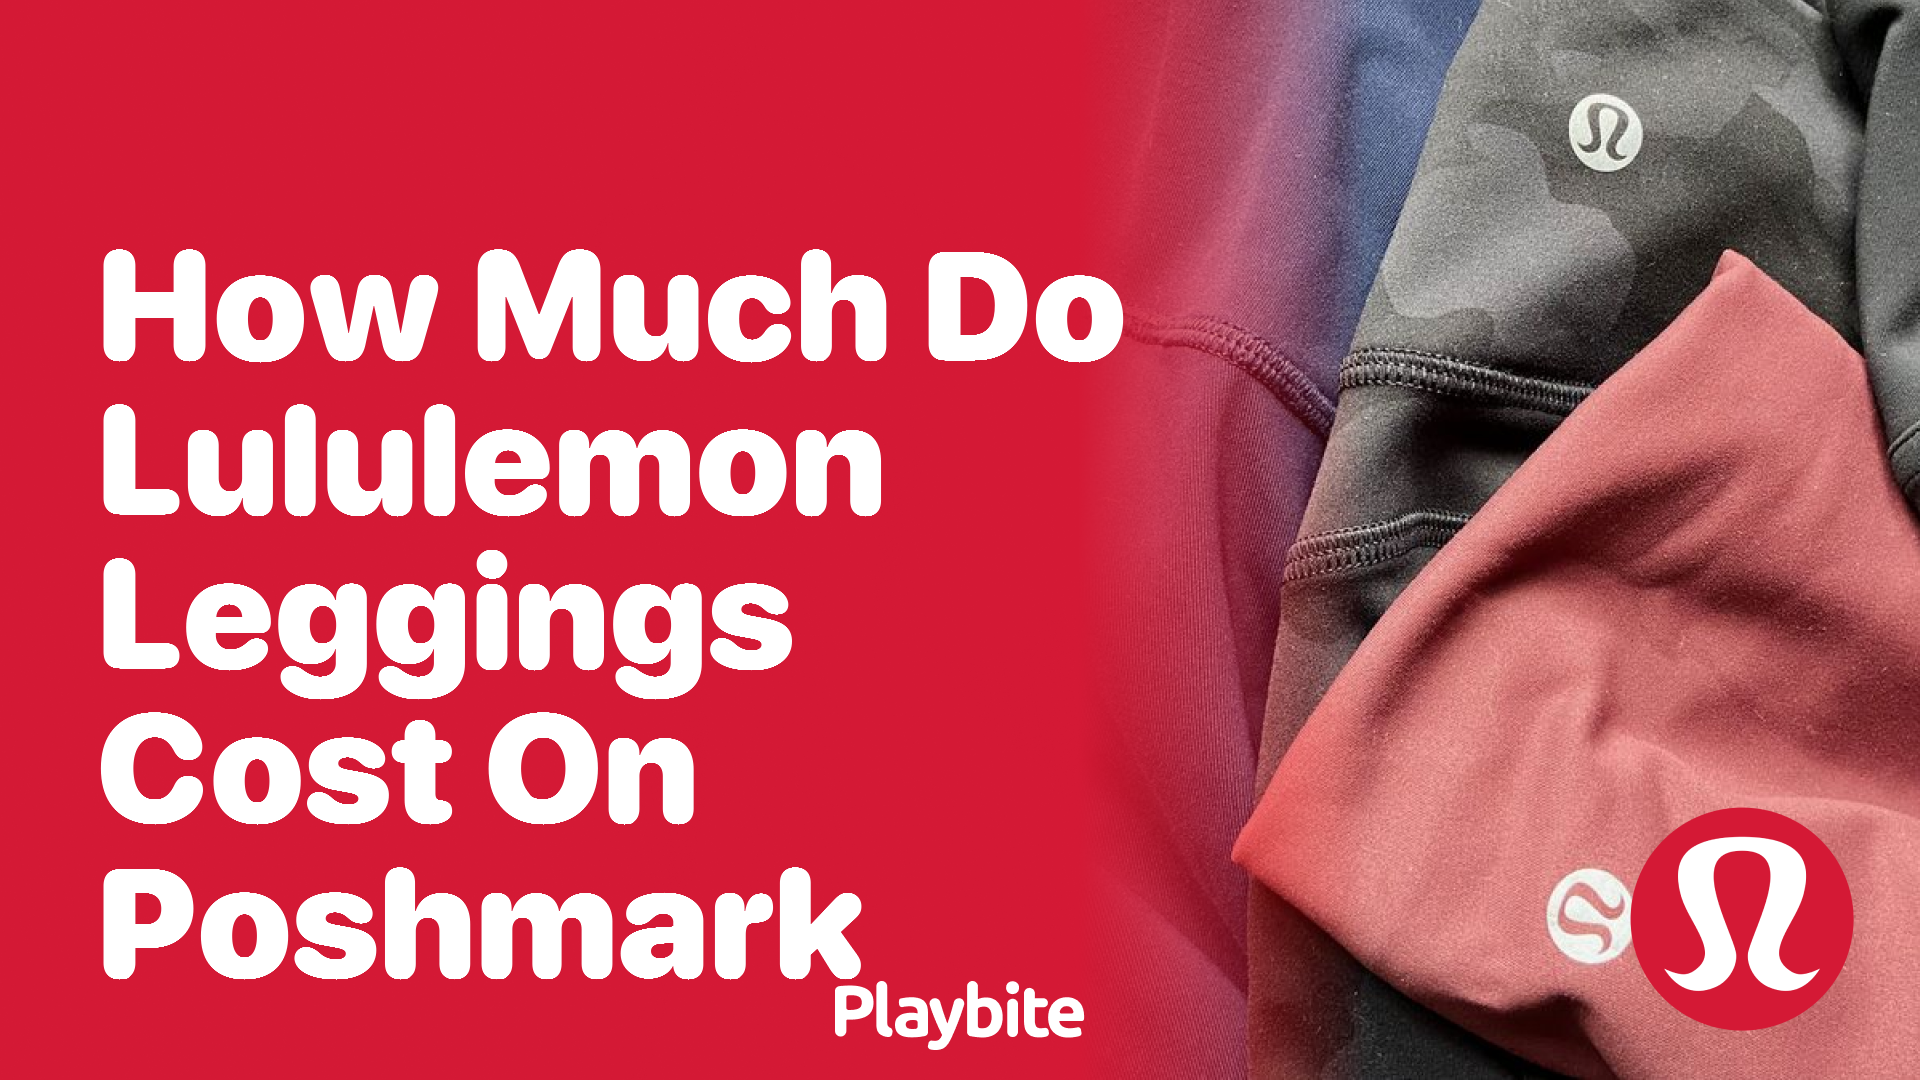 How Much Do Lululemon Leggings Cost on Poshmark? - Playbite